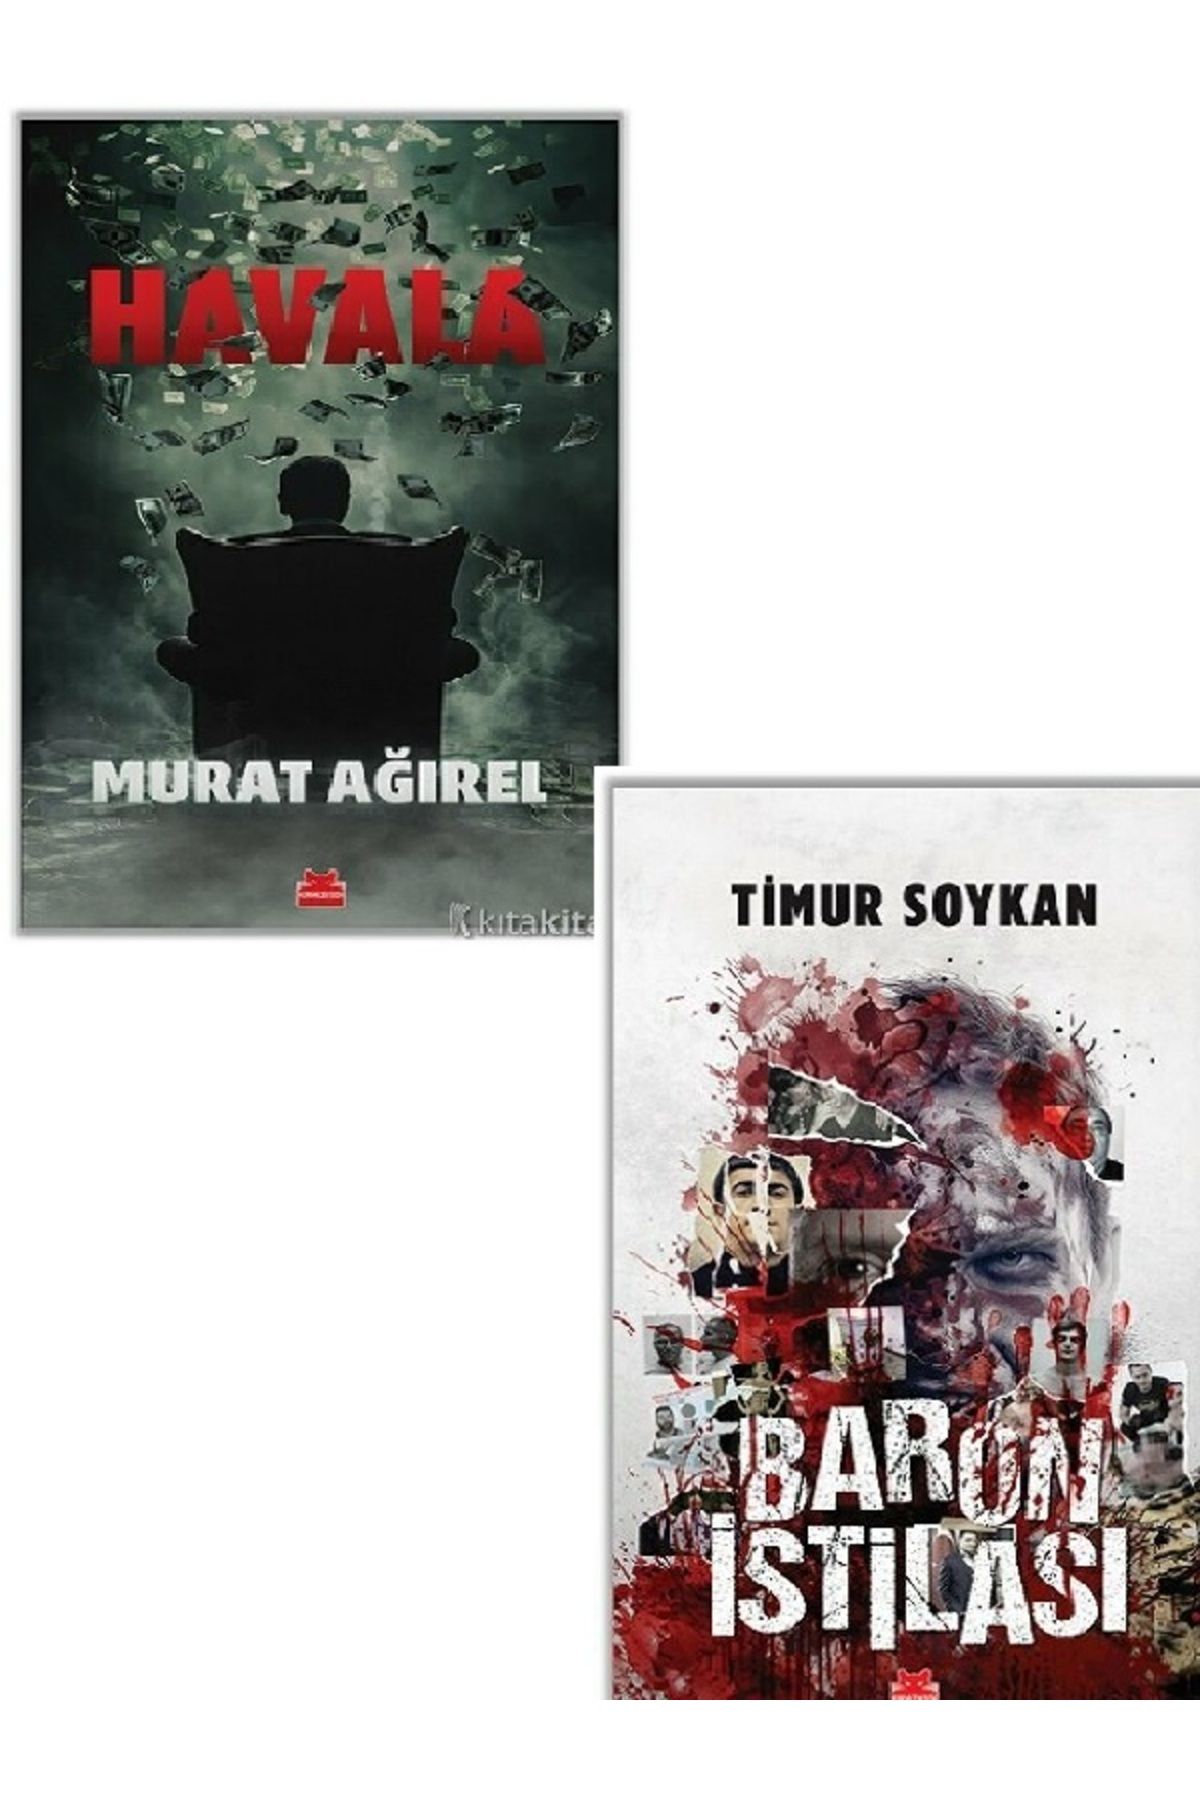 Destek Yayınları Havala - Baron İstilası - Timur Soykan - Murat Ağırel 2 KİTAP SET